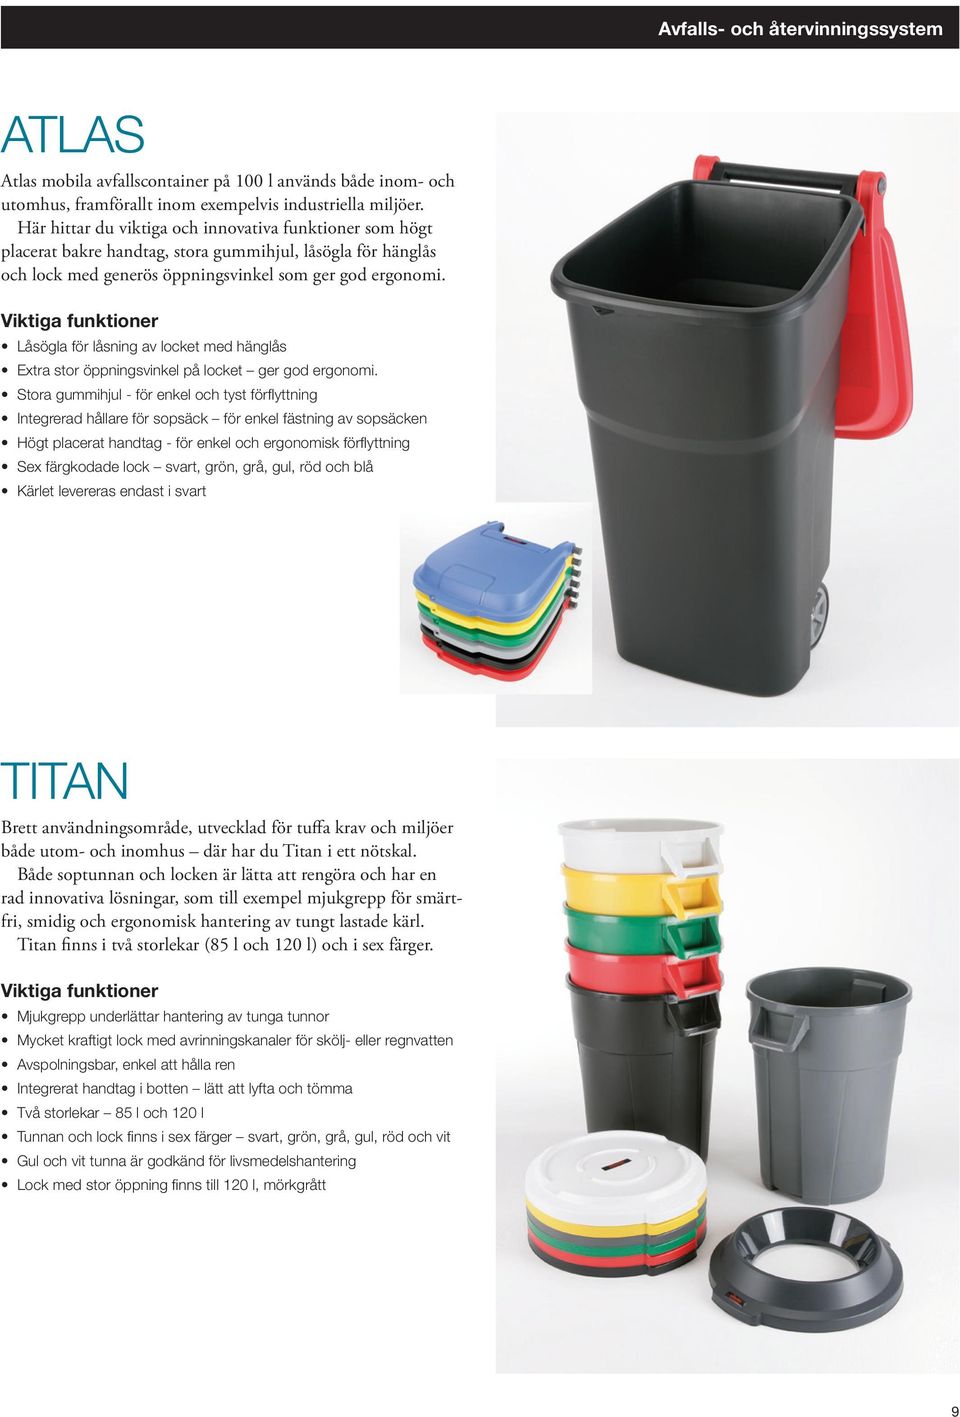 Kompletta lösningar för avfall och återvinning. Toppklass i design,  kvalitet och funktion - PDF Free Download